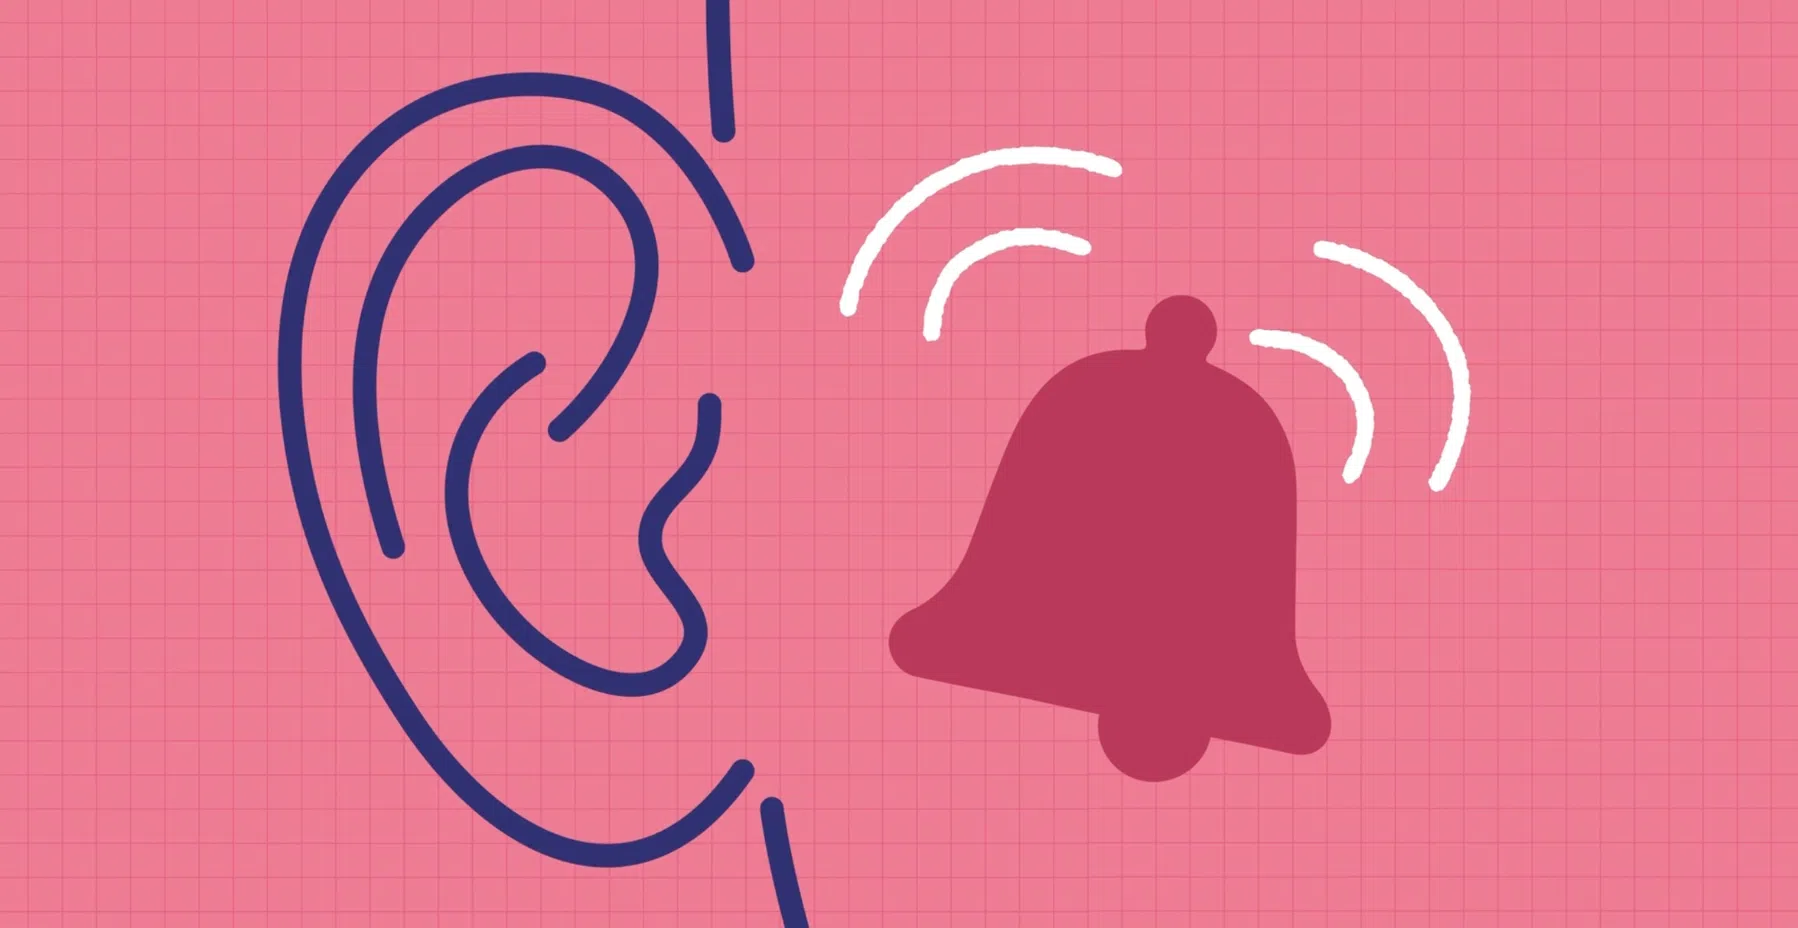 Apple-onderzoek: 77 procent van de mensen heeft ooit last gehad van piep in oren